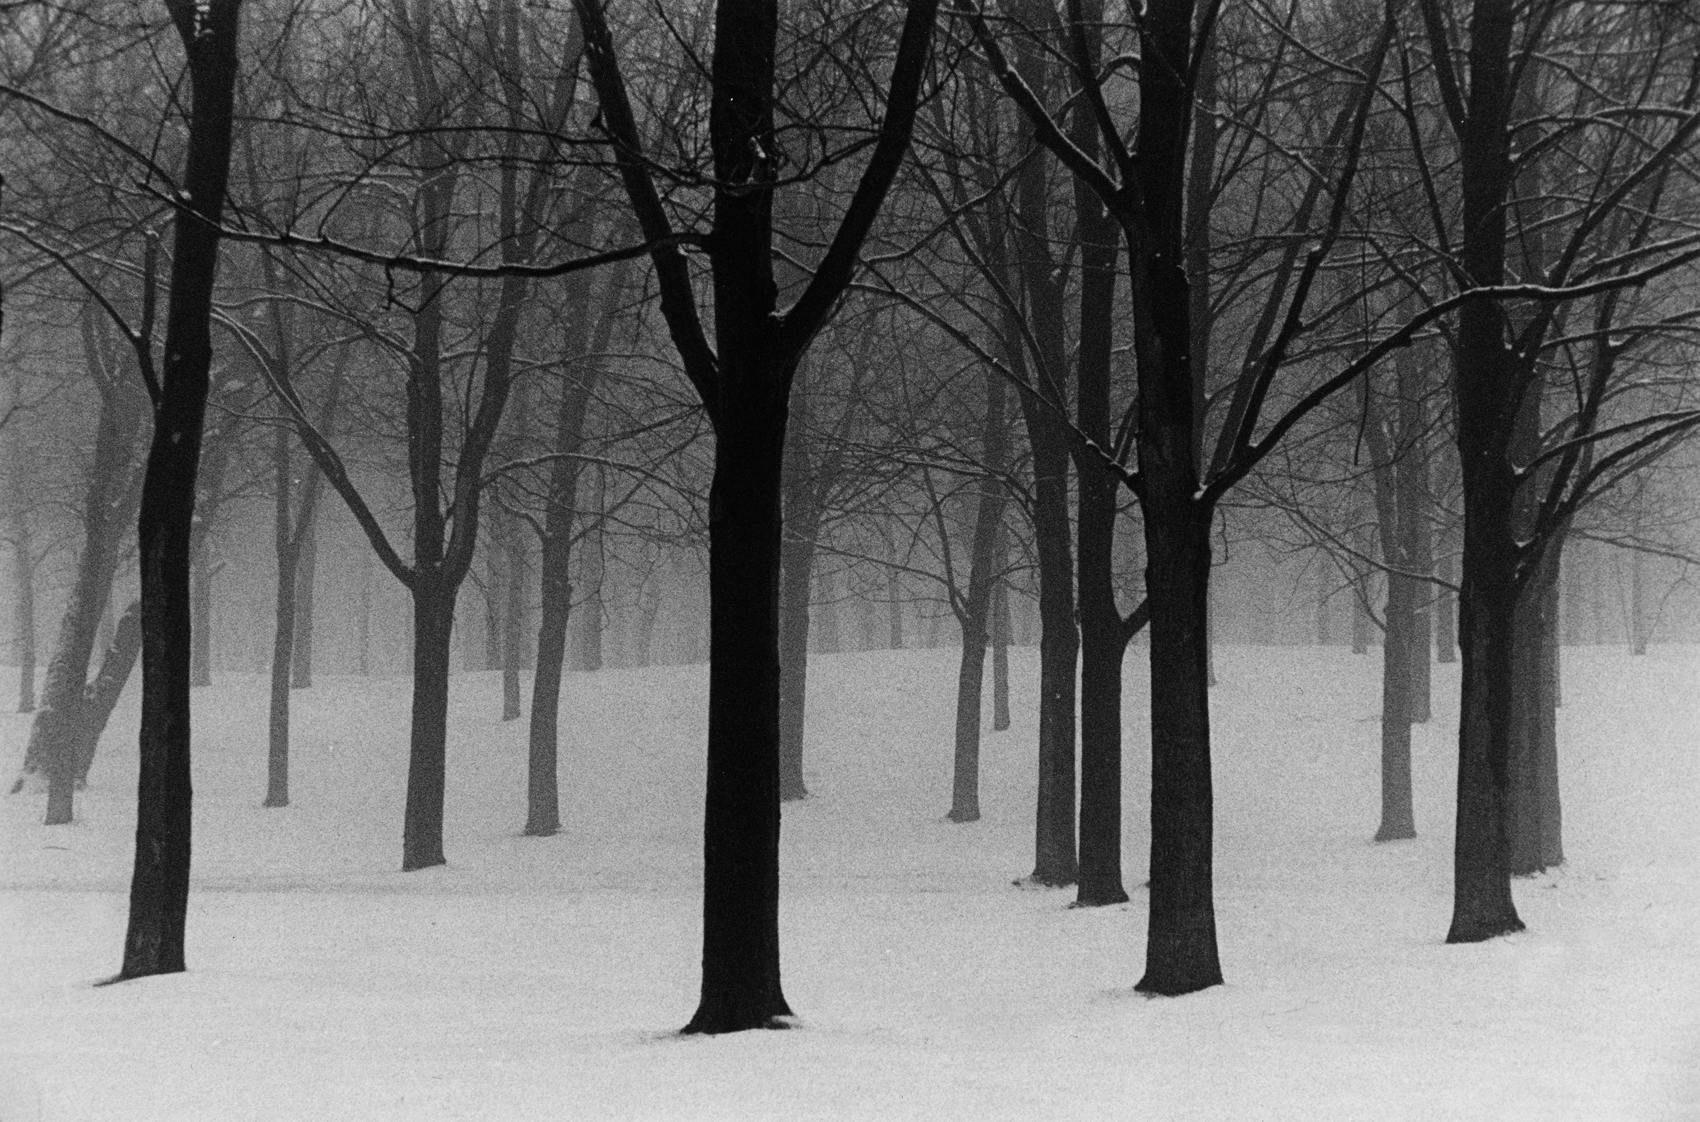   &nbsp; Trees in Snow N°2 | Arbres dans la neige N°2  